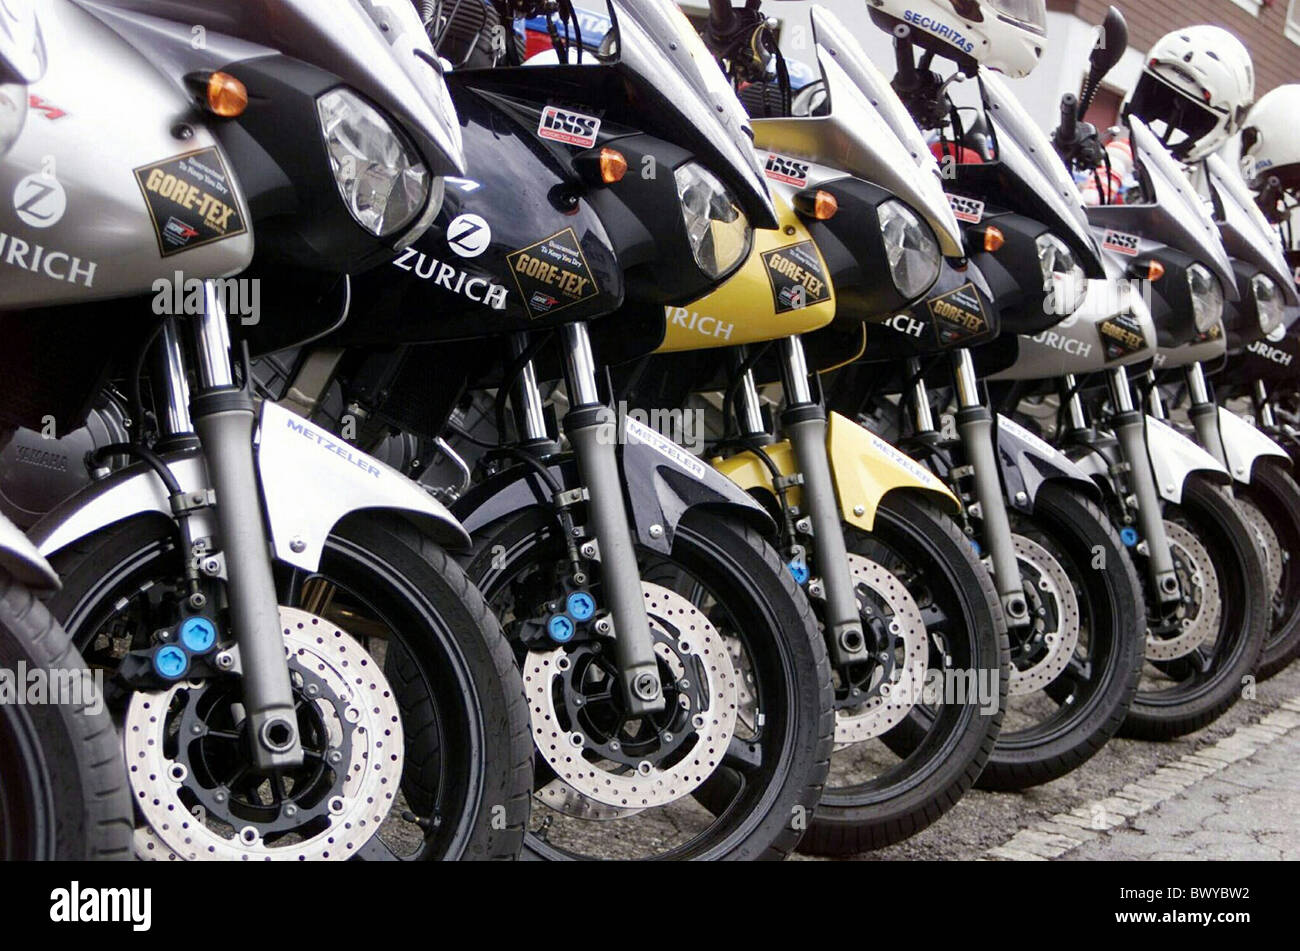 Détail des motos moto moto garée parking motos de course roues Photo Stock  - Alamy